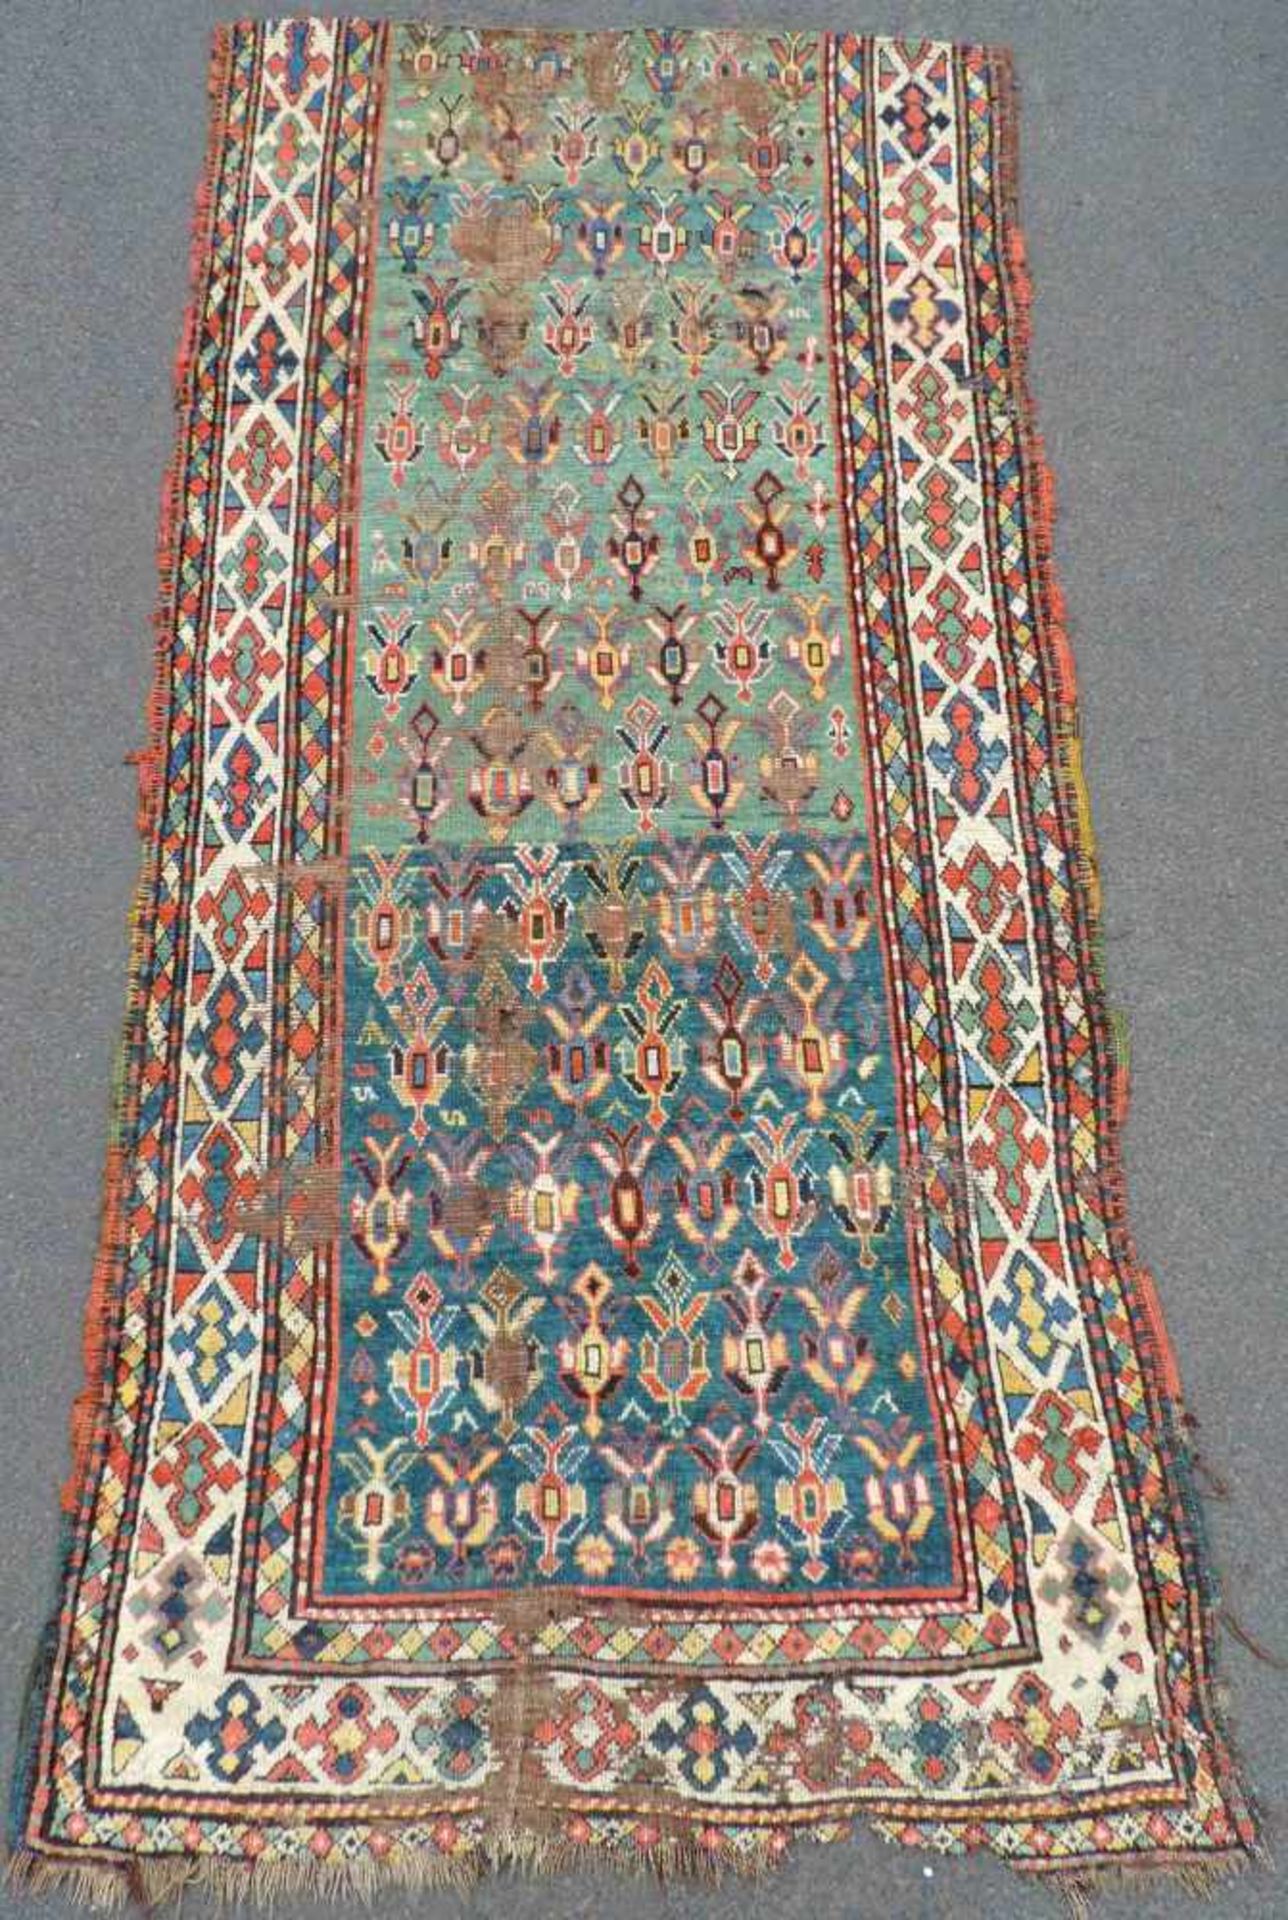 Gendje Teppichfragment. Kaukasus, antik frühes 19. Jahrhundert. 208 cm x 112 cm. Handgeknüpft. Wolle